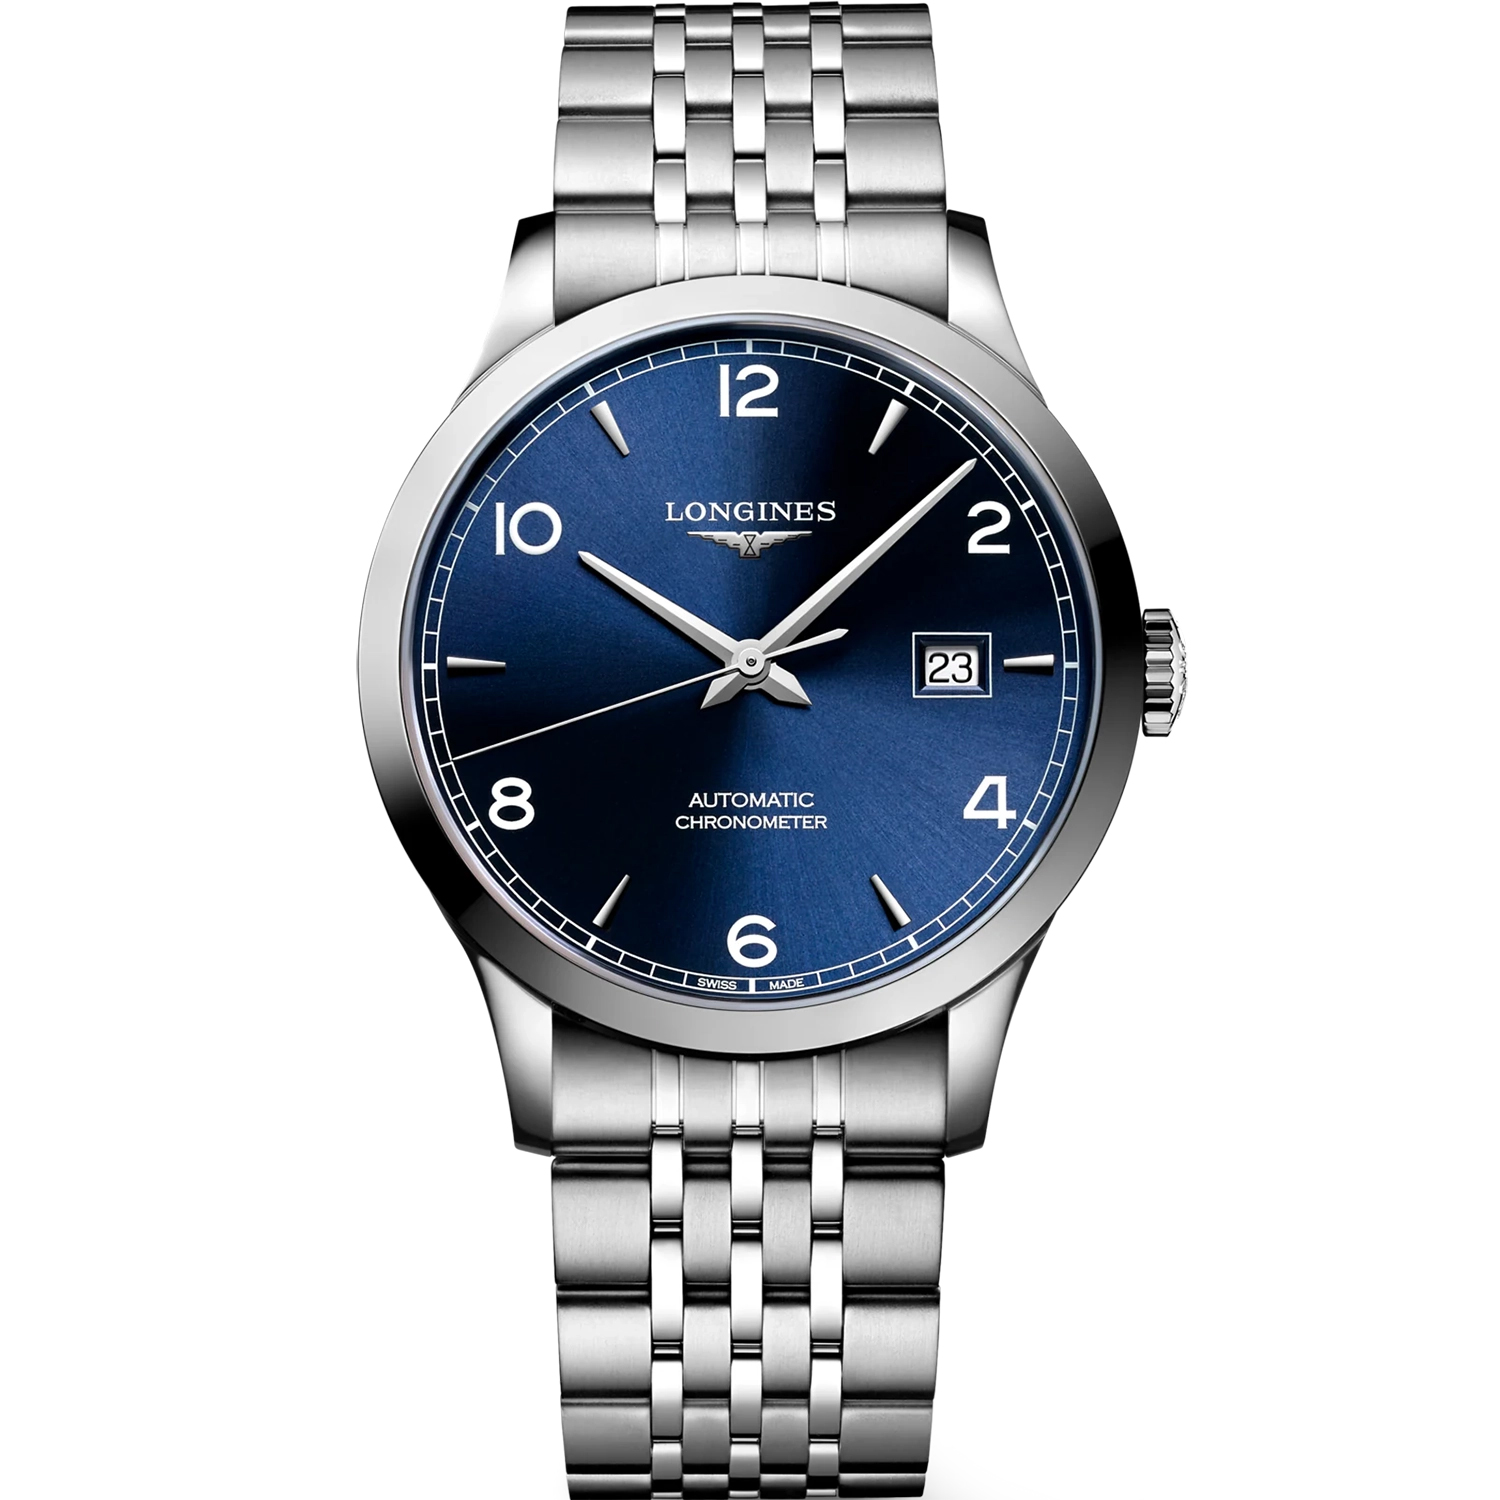 LONGINES Automatikuhr Swiss Made L28214966 Record Herren Uhr Chronometer, Uhrwerk: L888.4 schweizer Mechanisches Uhrwerk mit Automatikaufzug